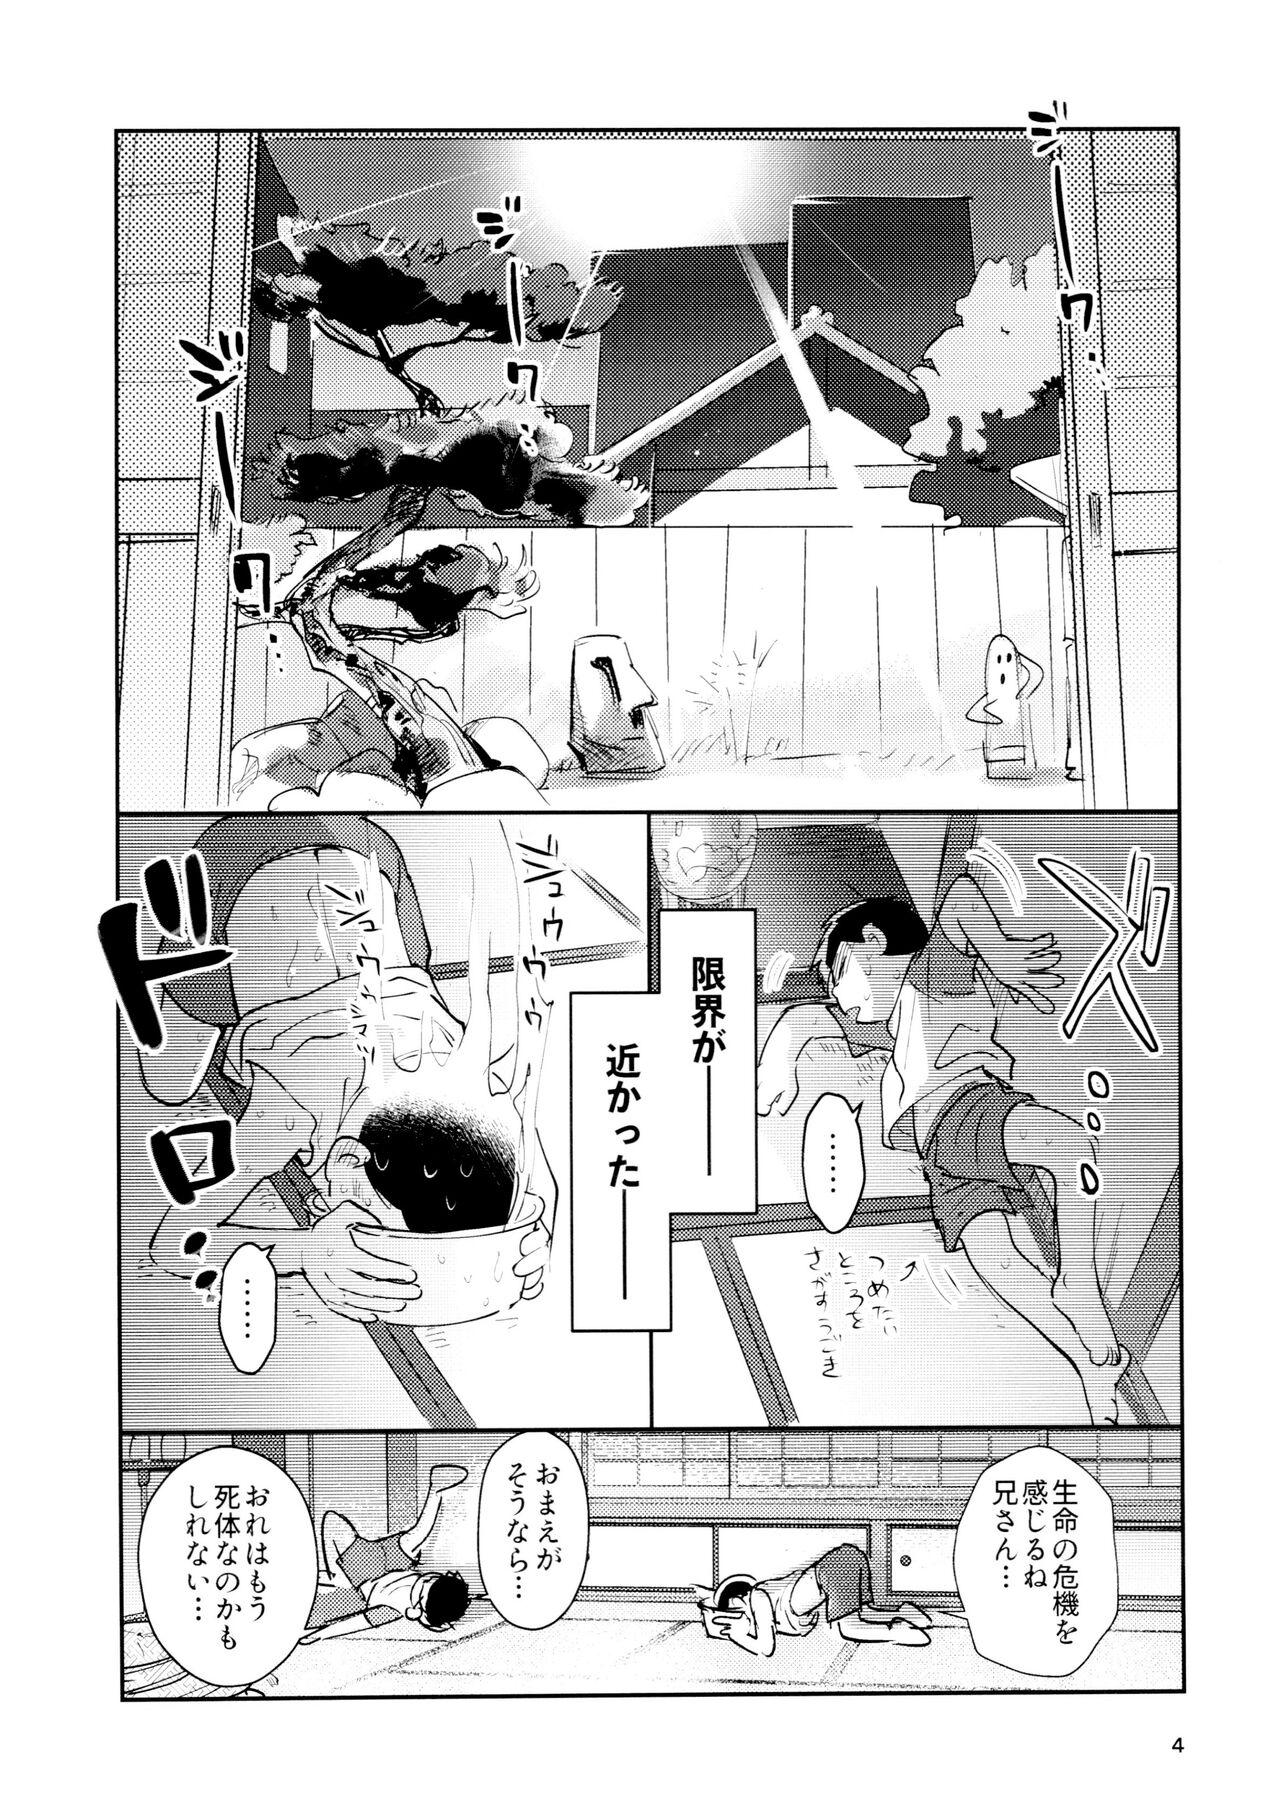 Ex Girlfriend Zatsu Shinkiro's - Osomatsu san Twistys - Page 4